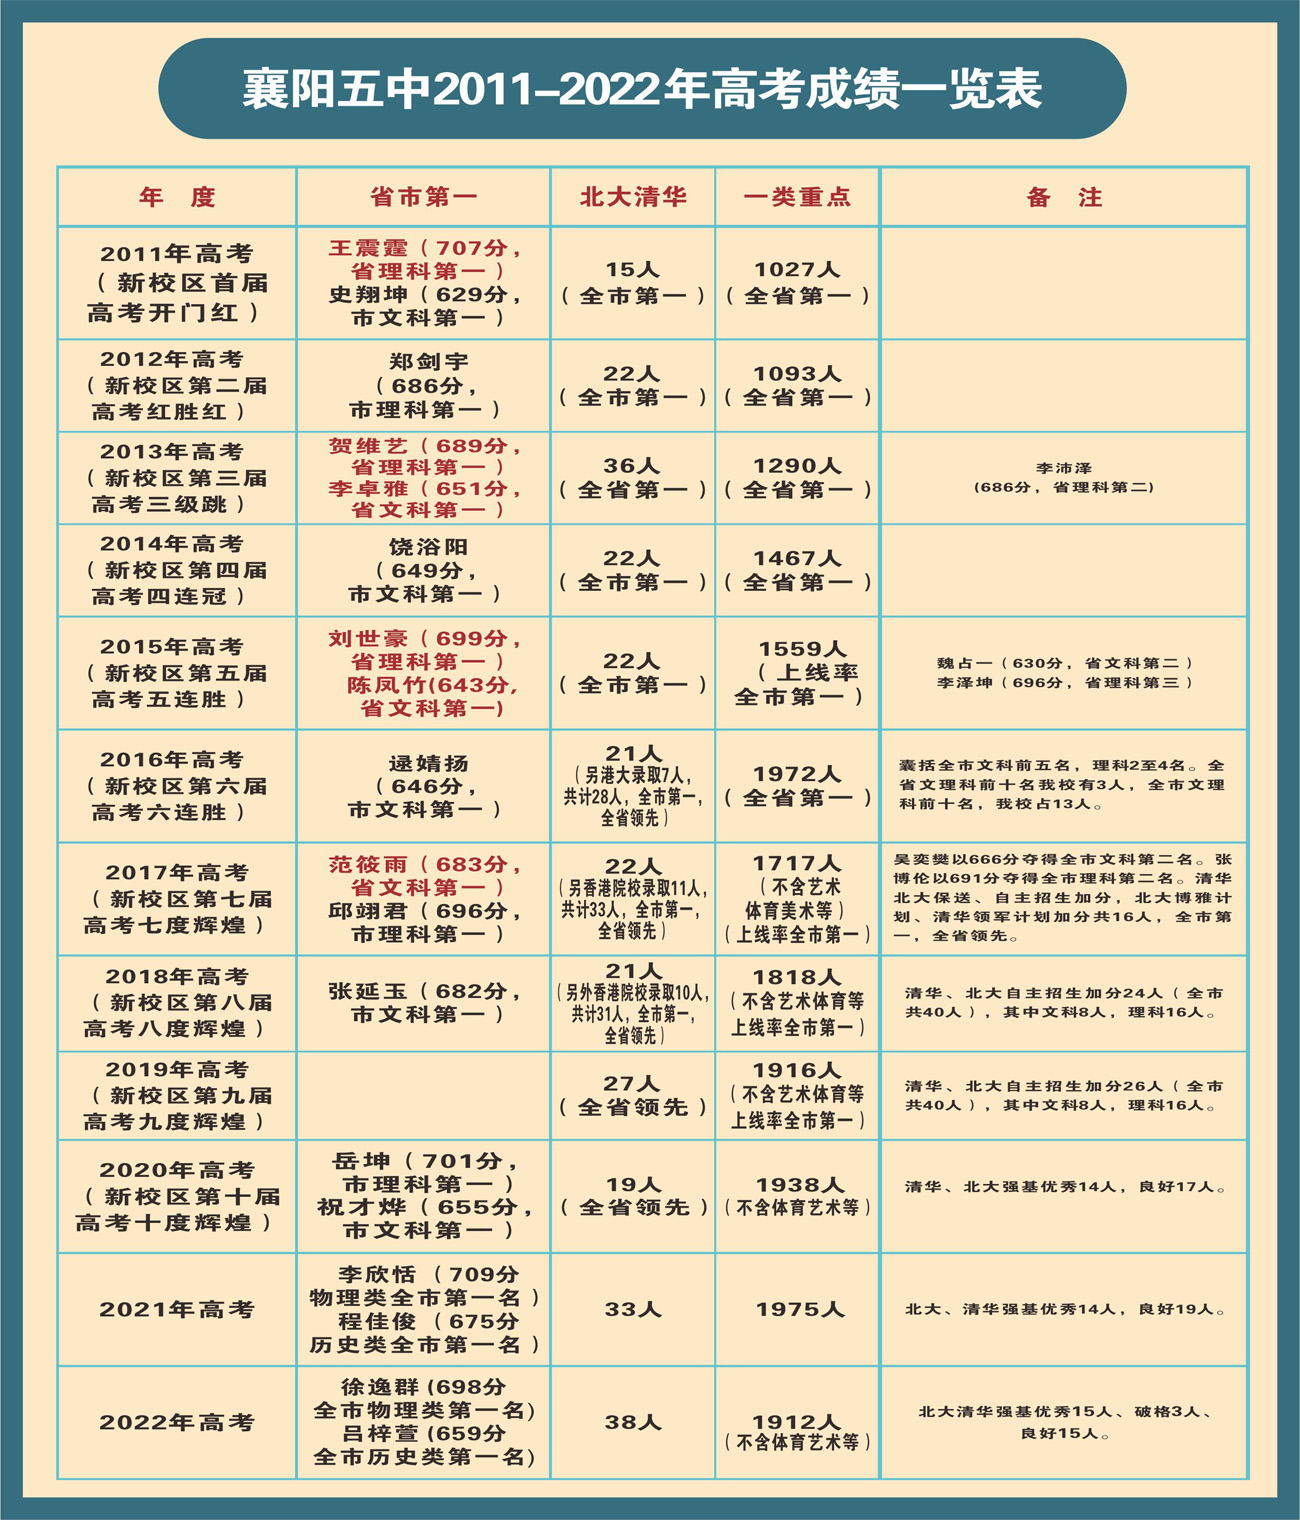 襄阳五中2011-2022年高考成绩一览表(发布).jpg